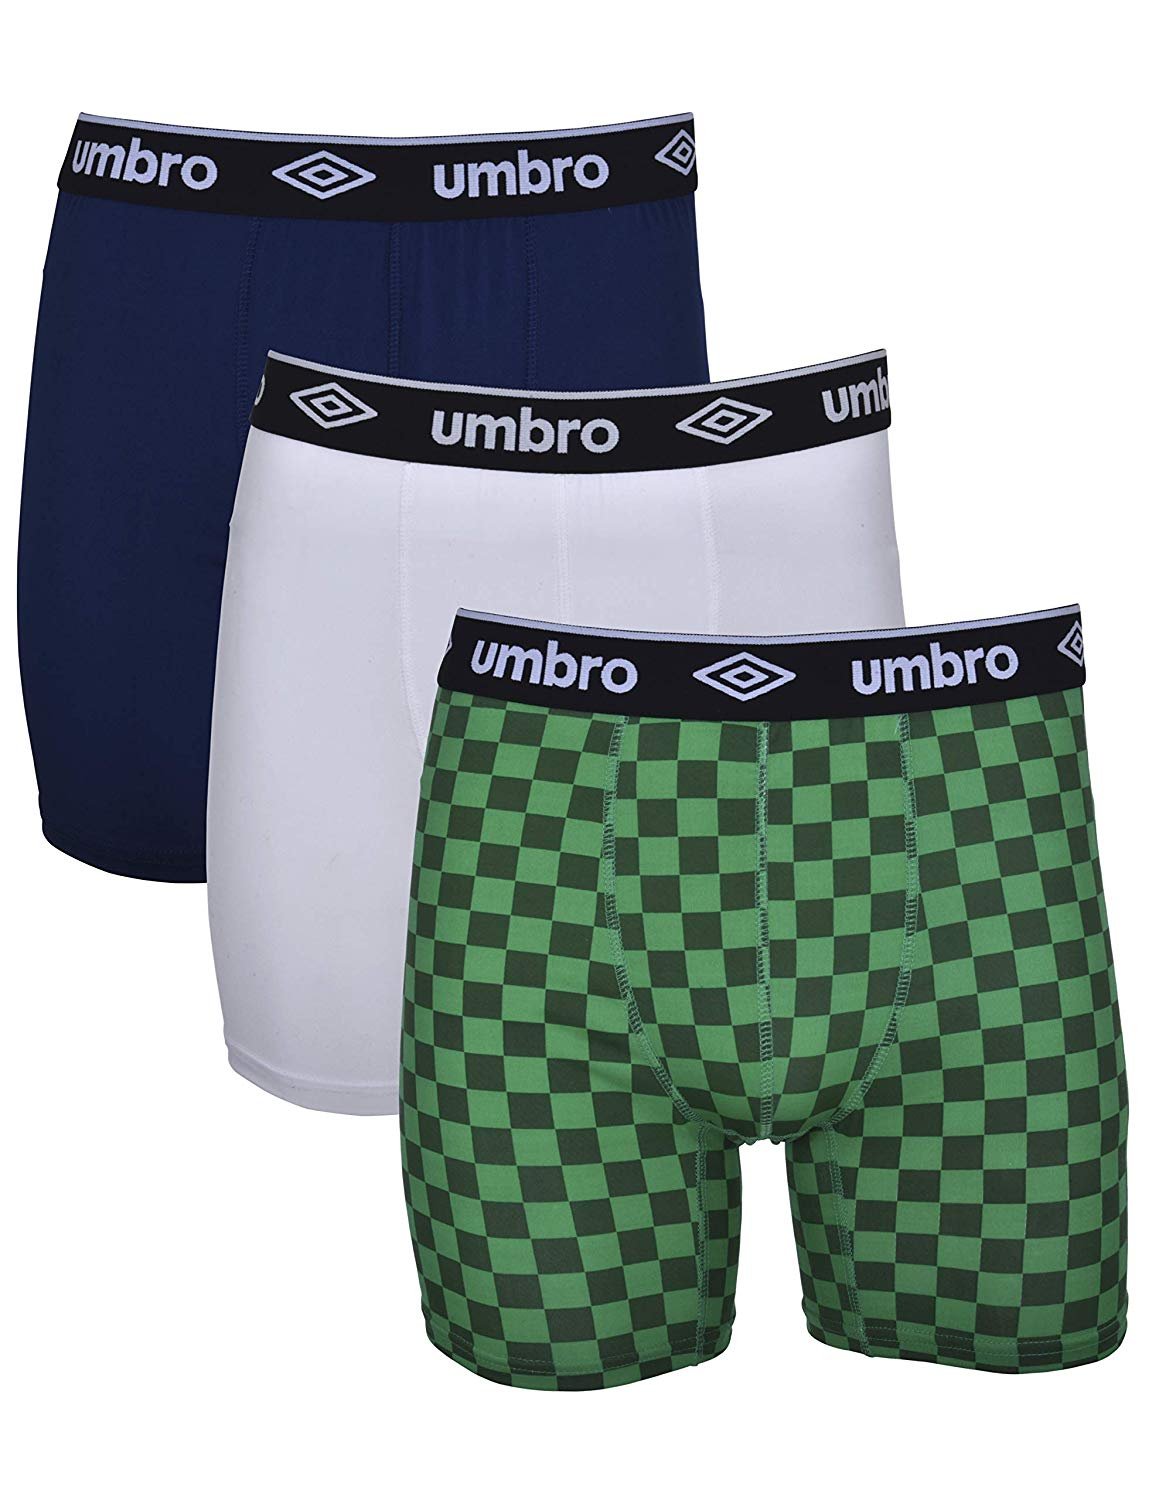 dreigen Picasso andere Umbro Mens Performance Underwear - 3-Pack Stretch Performance Boxer  Briefs... | eBay